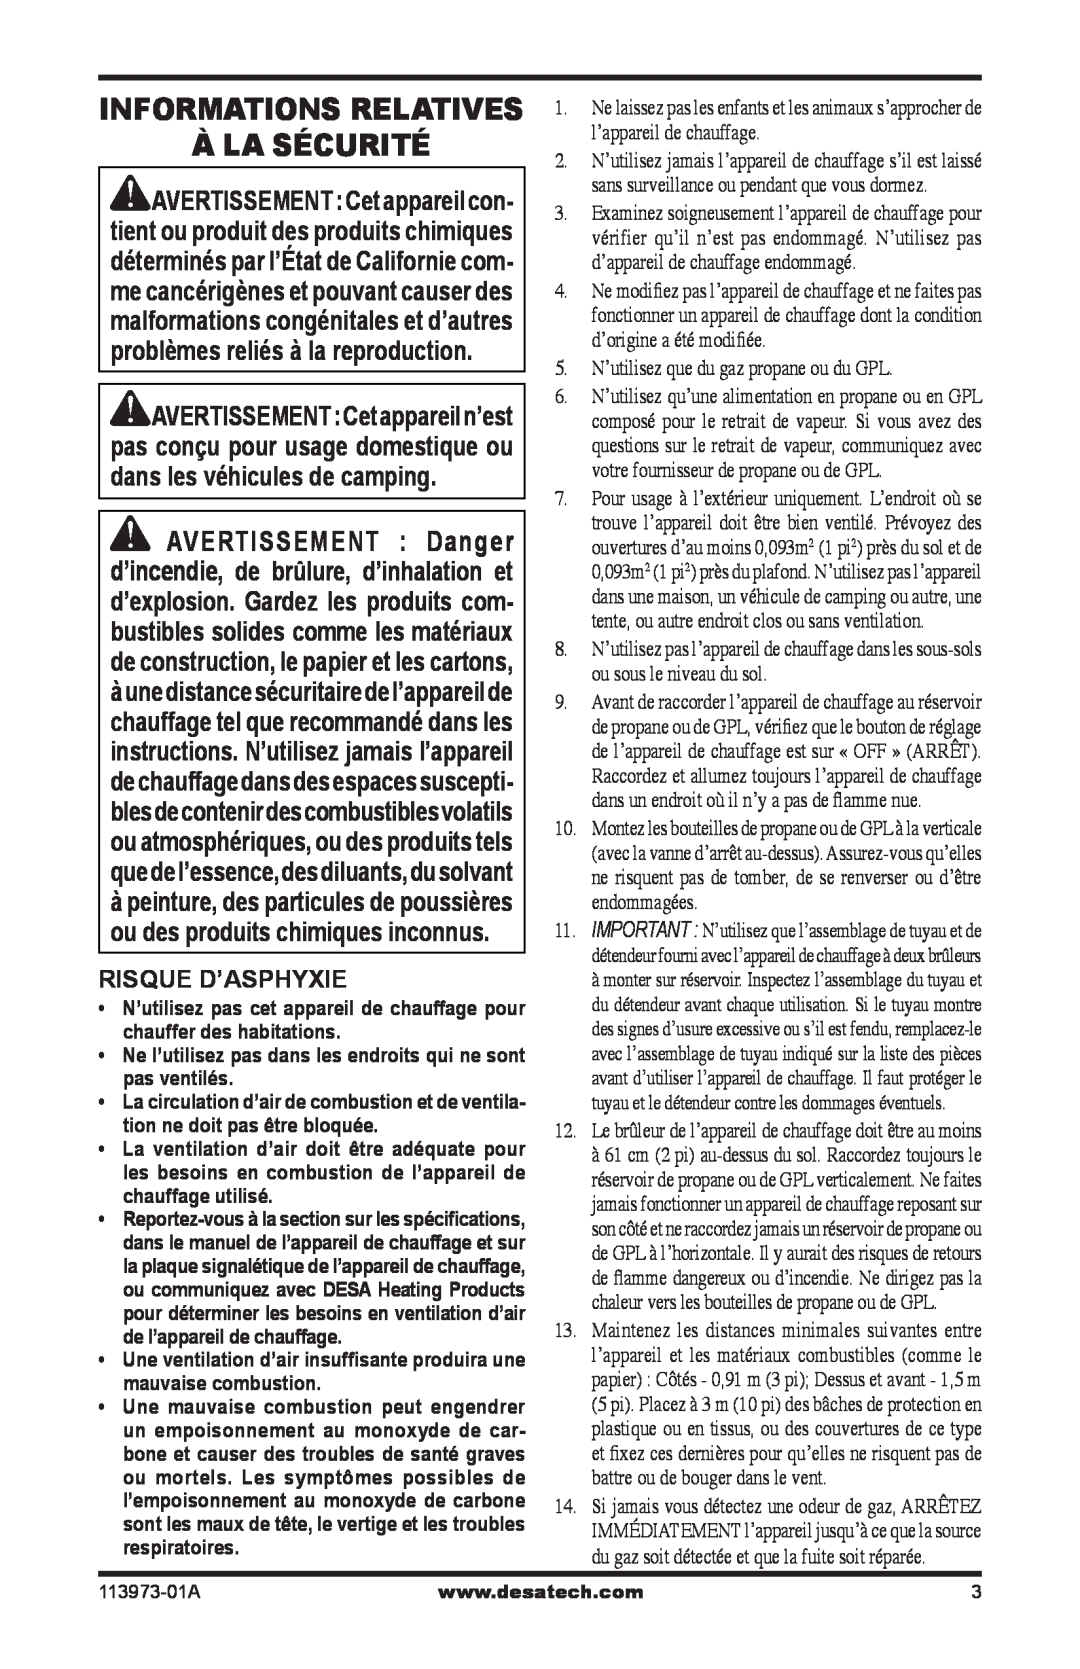 Desa SPC-15R, TT30 10, TT15A 10 owner manual À La Sécurité, Informations Relatives, Risque D’Asphyxie 